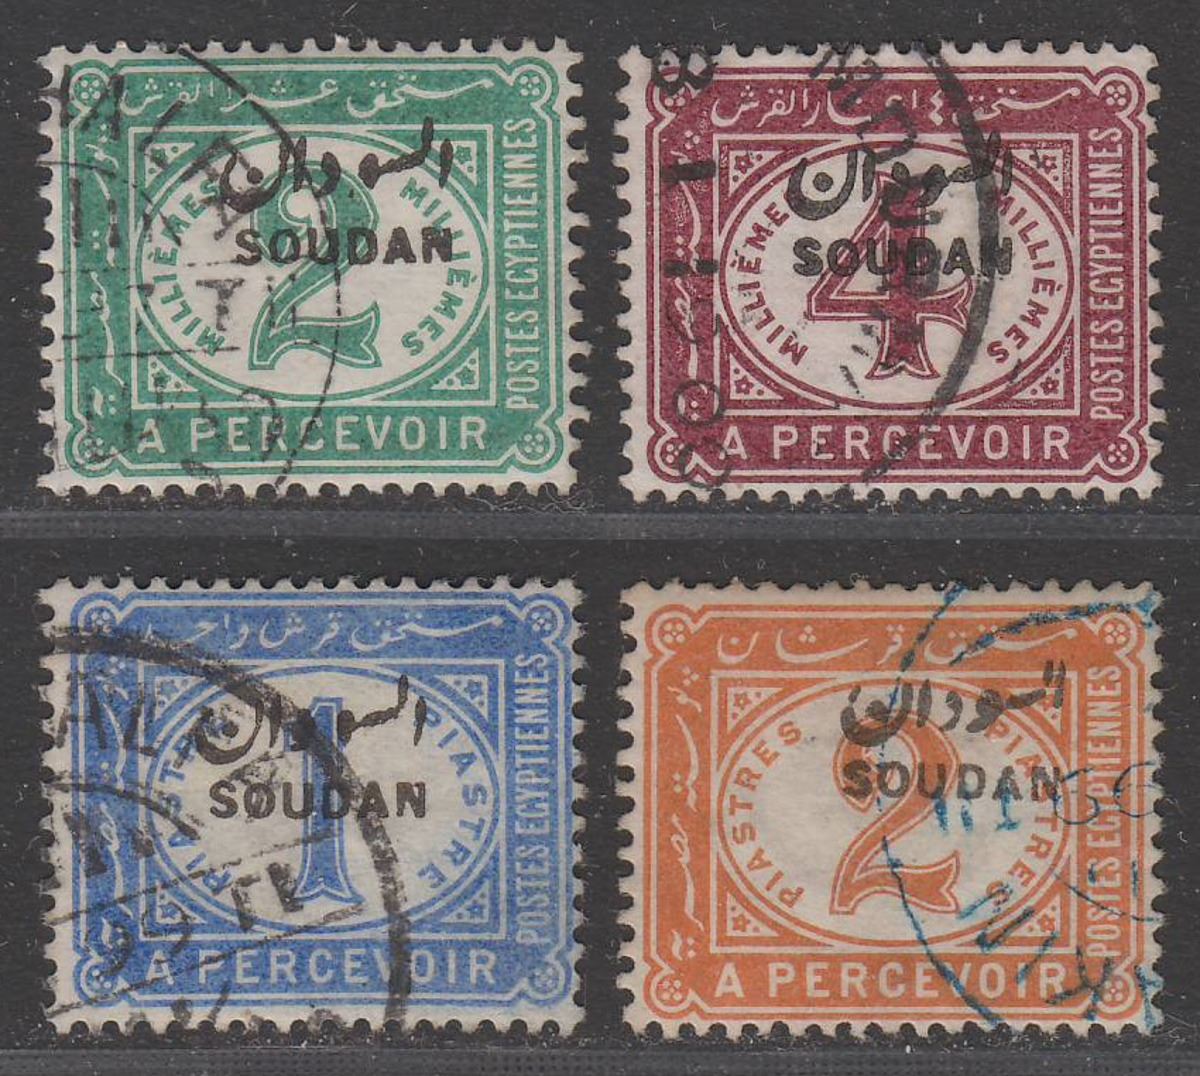 Sudan 1897 QV Postage Due Overprint Set Used SG D1-D4 cat £15